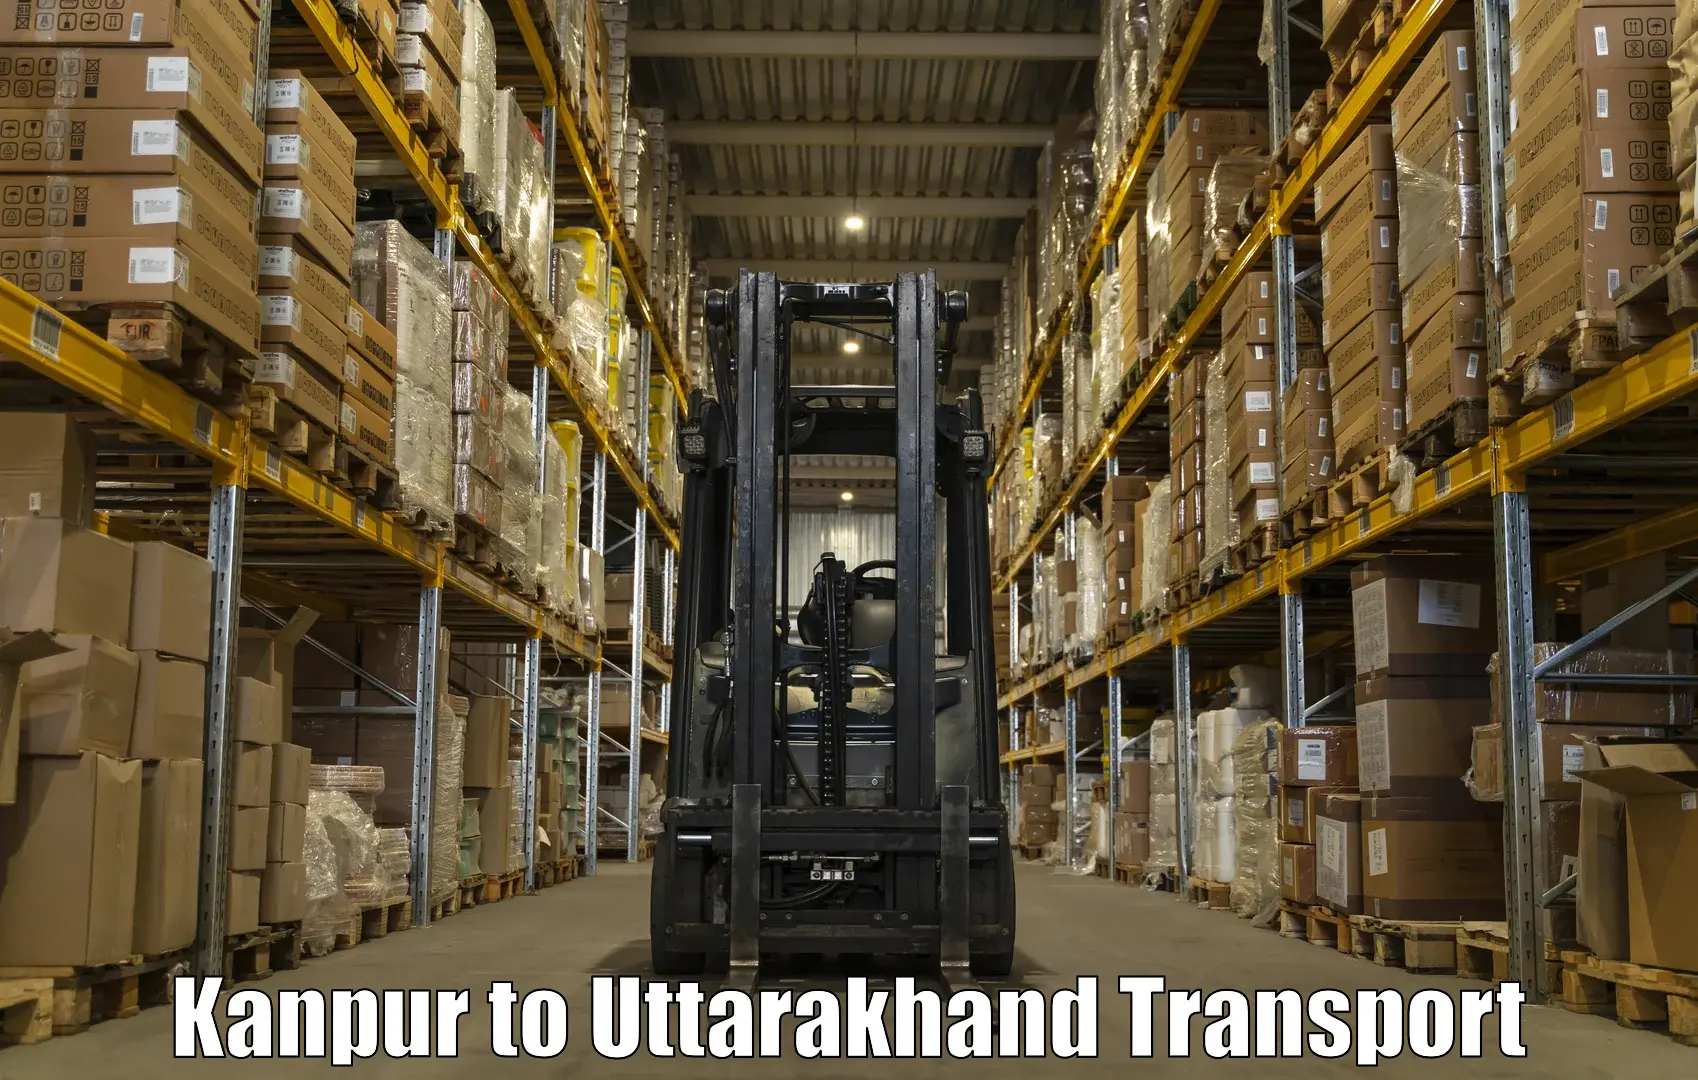 Interstate transport services Kanpur to Kotdwara